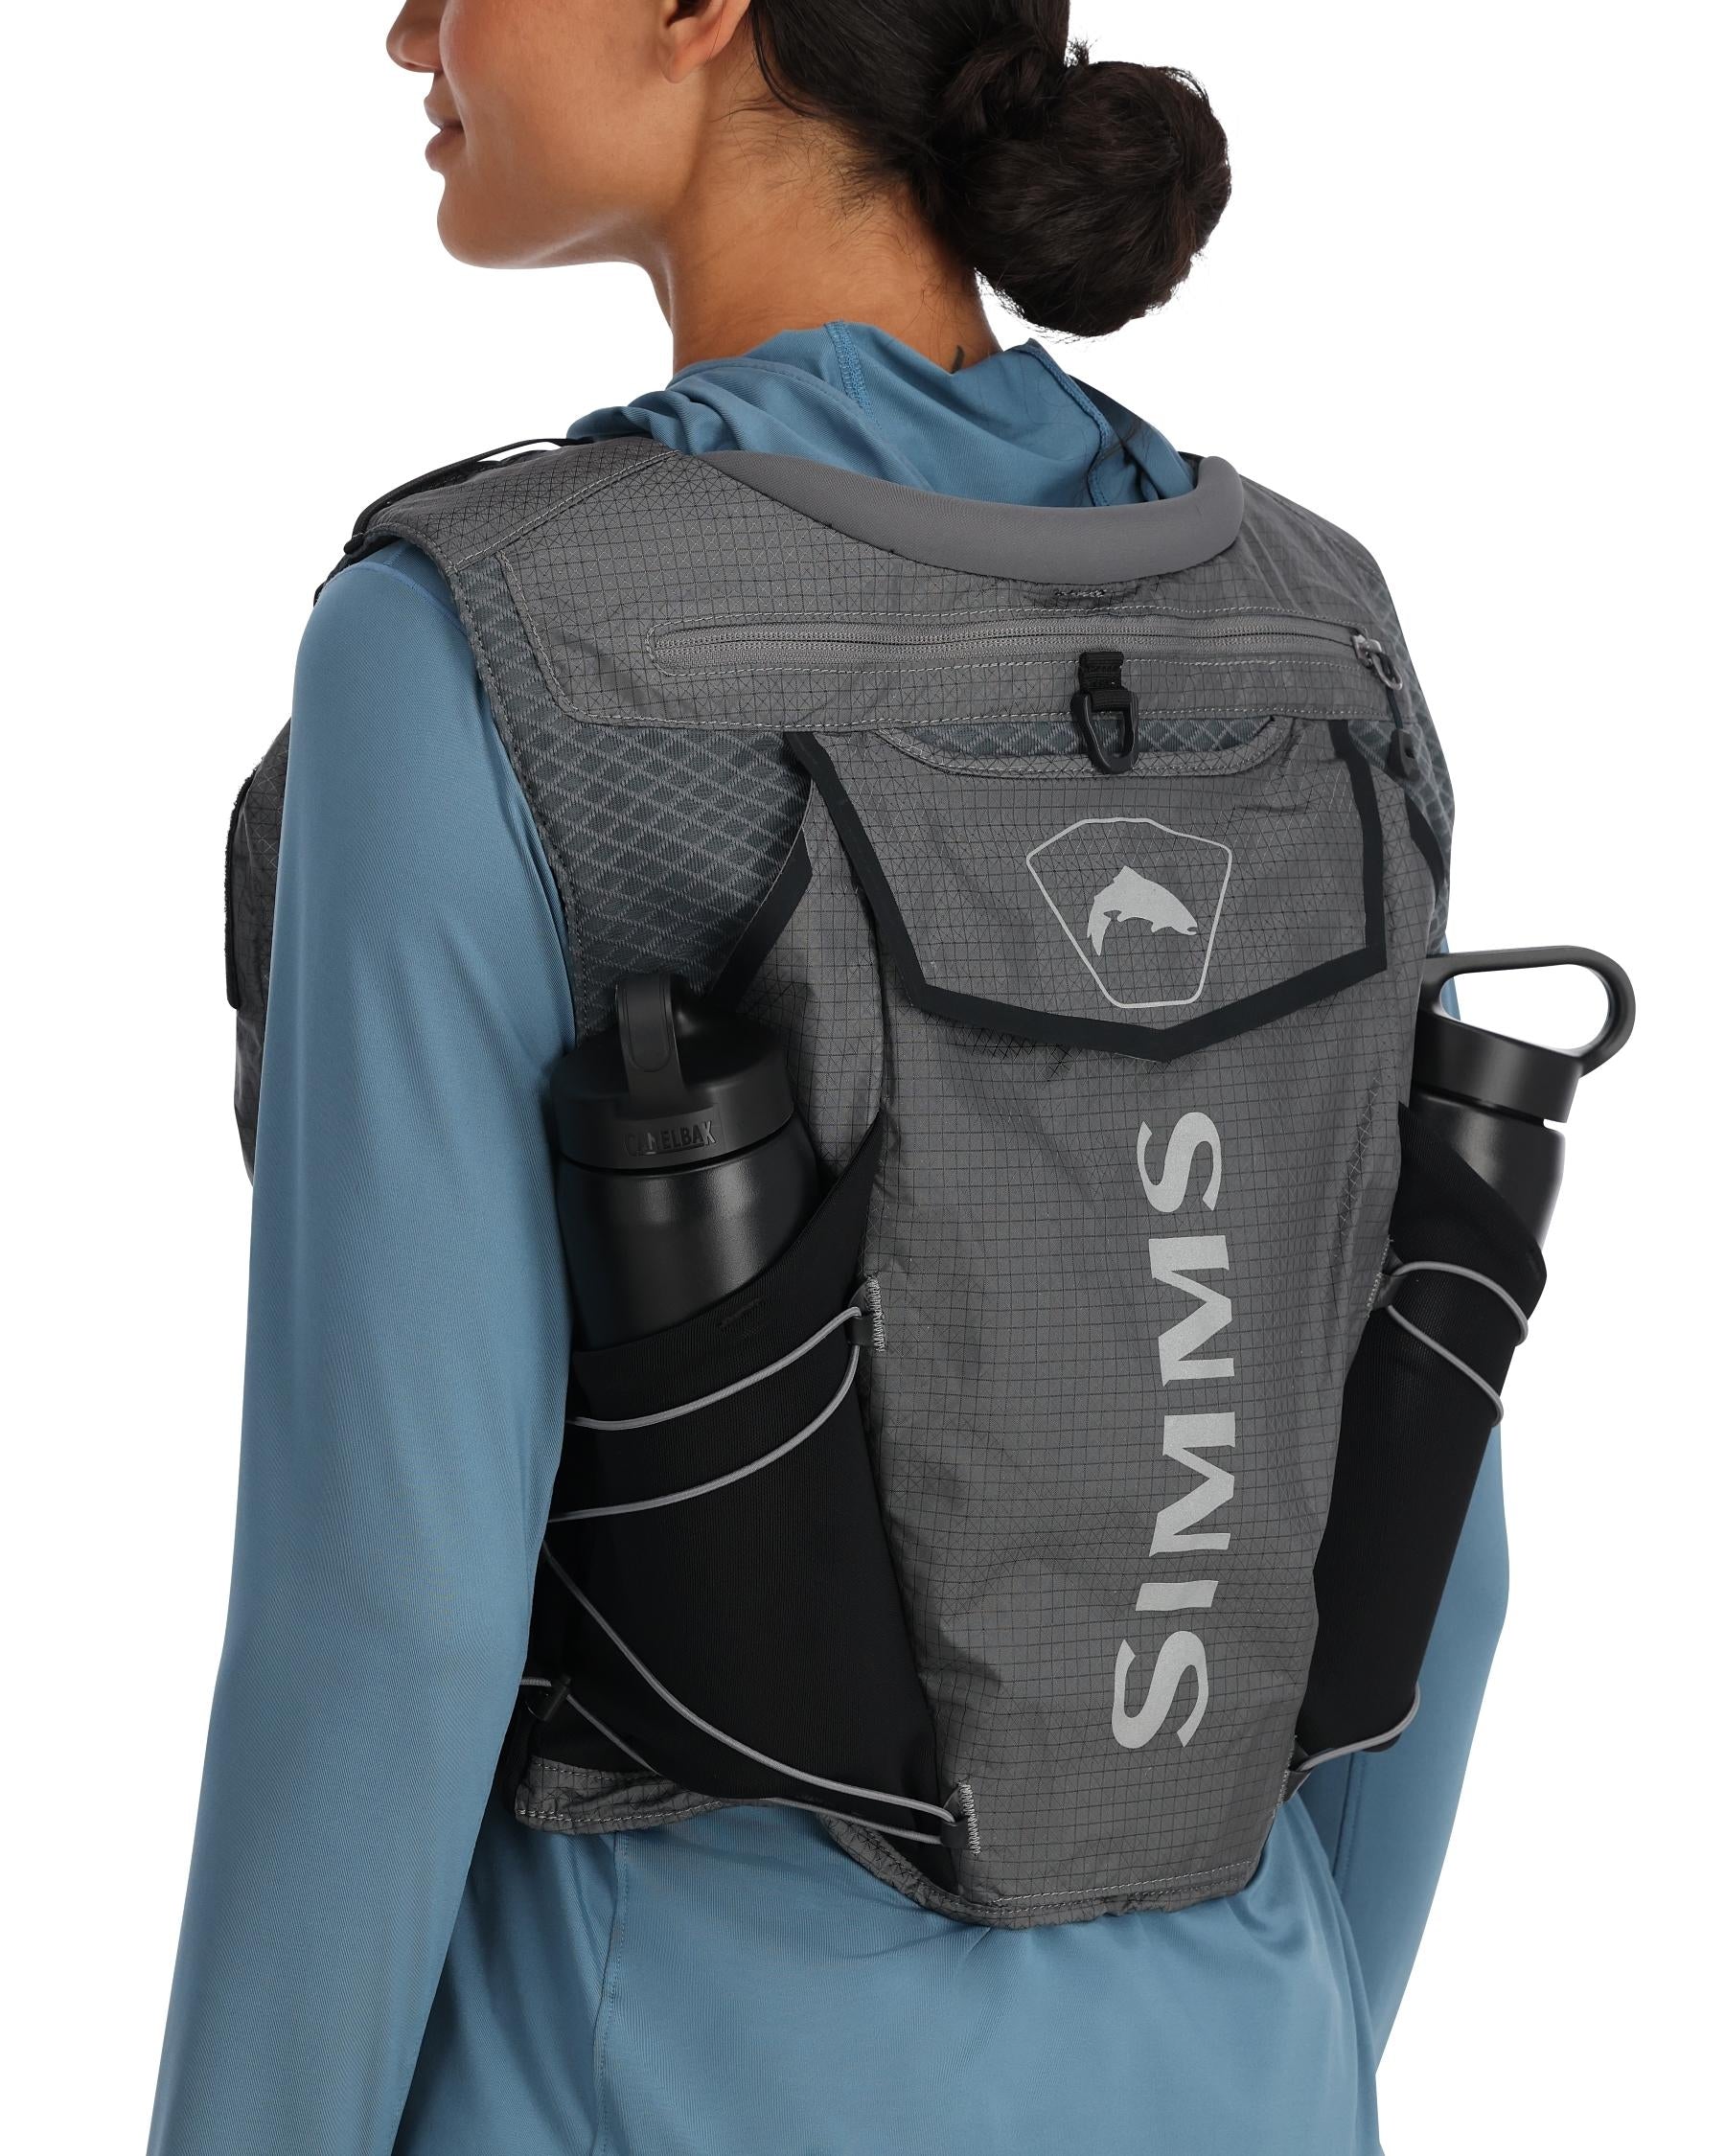 即日発送可能 Simms Guide Fly Fishing Vest Size M With Extras 海外